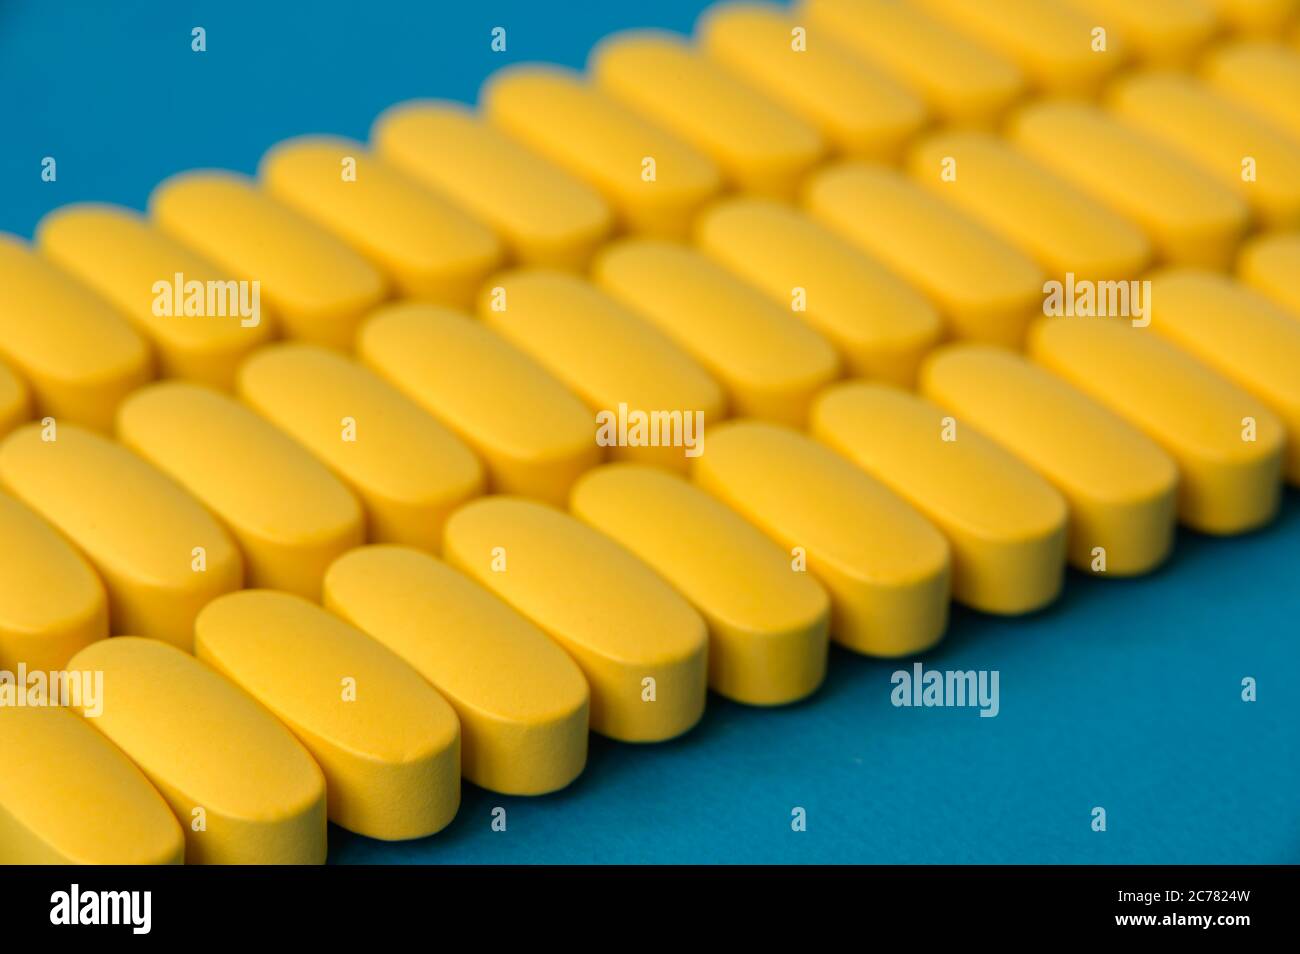 pharmakologie Industrie Konzept von vielen Reihen von gelben Pillen Tabletten von Vitamin-Medikamenten auf blauer Oberfläche Stockfoto